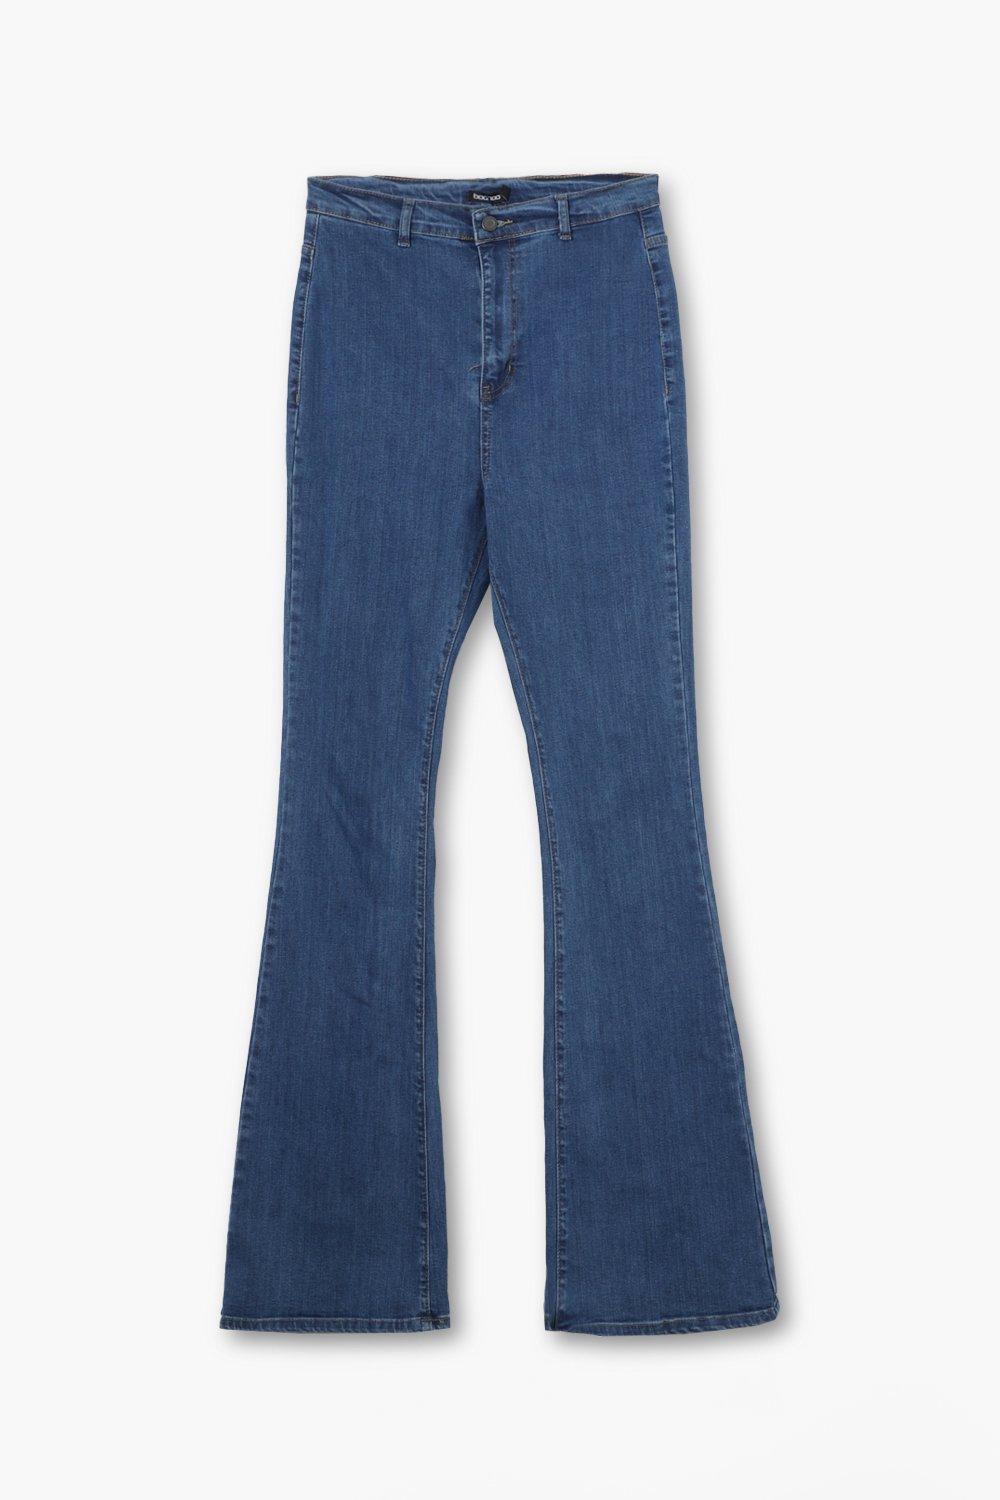 DAMEN Jeans Basisch Rabatt 64 % Dunkelblau 5XL Zhouyou Flared jeans 